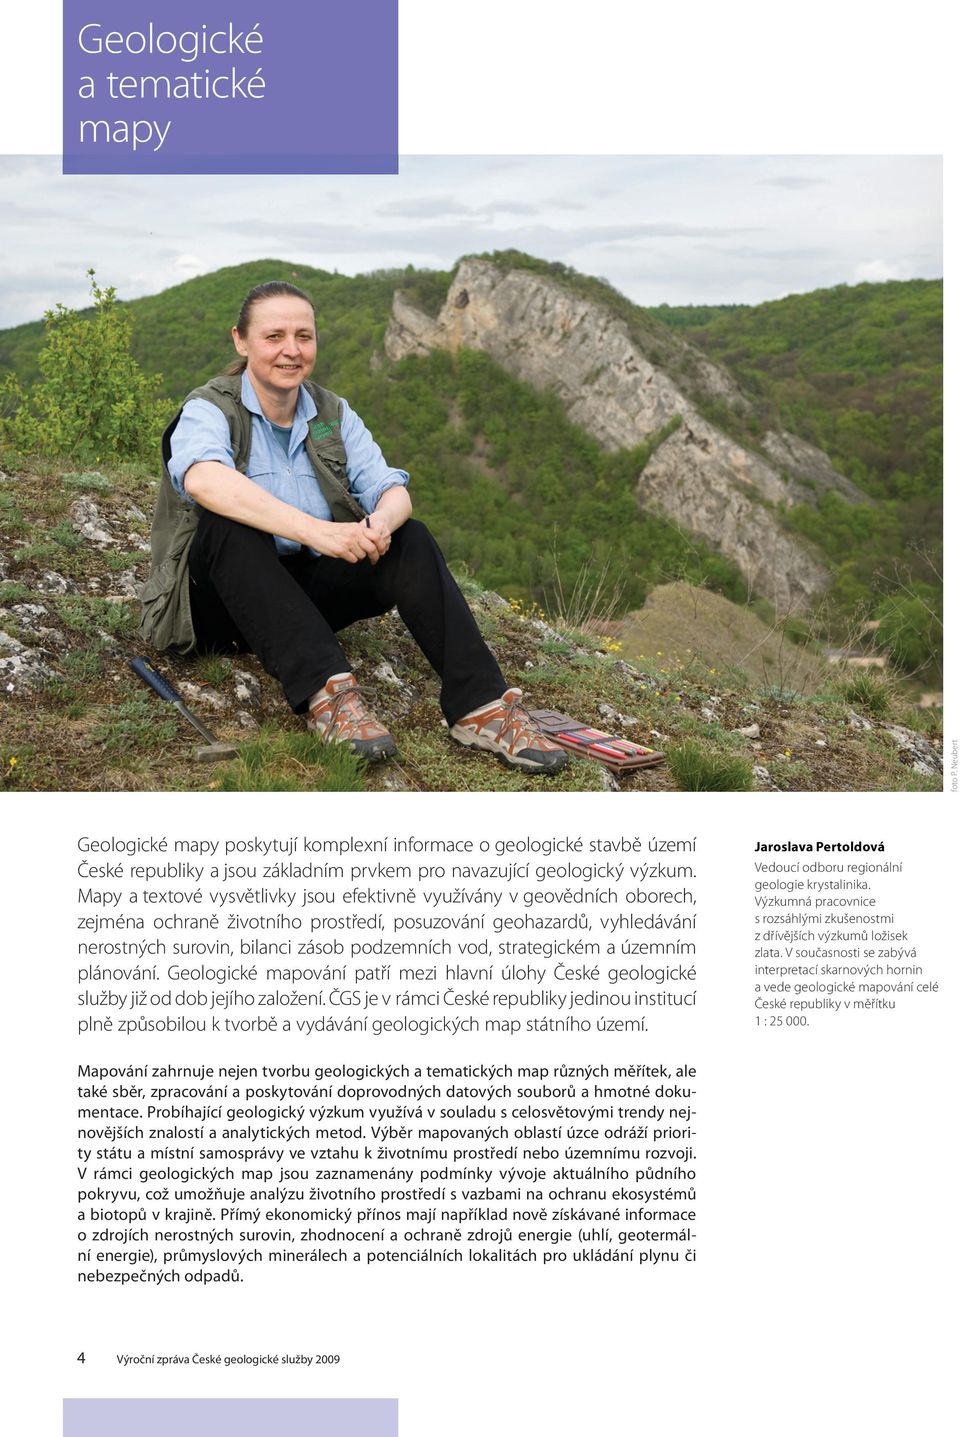 strategickém a územním plánování. Geologické mapování patří mezi hlavní úlohy České geologické služby již od dob jejího založení.